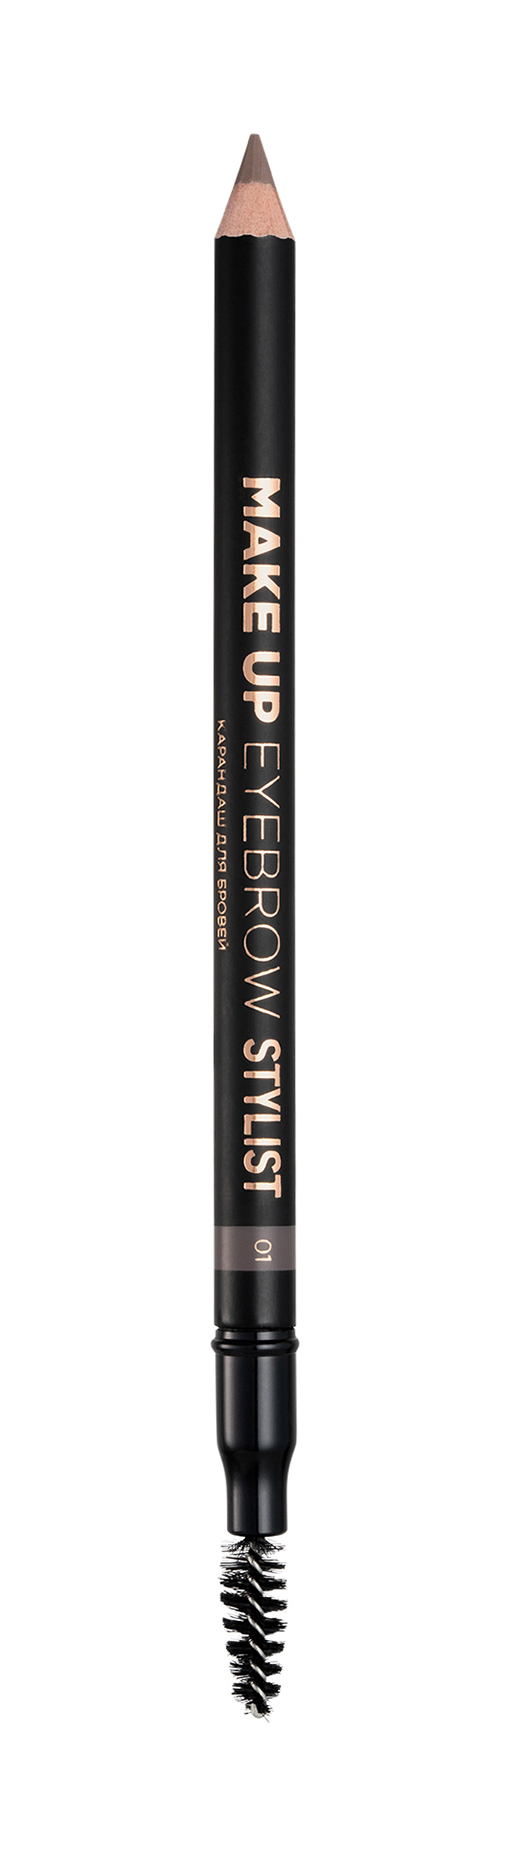 Карандаш для бровей Eva Mosaic Make up Eyebrow Stylist 1 оттенок